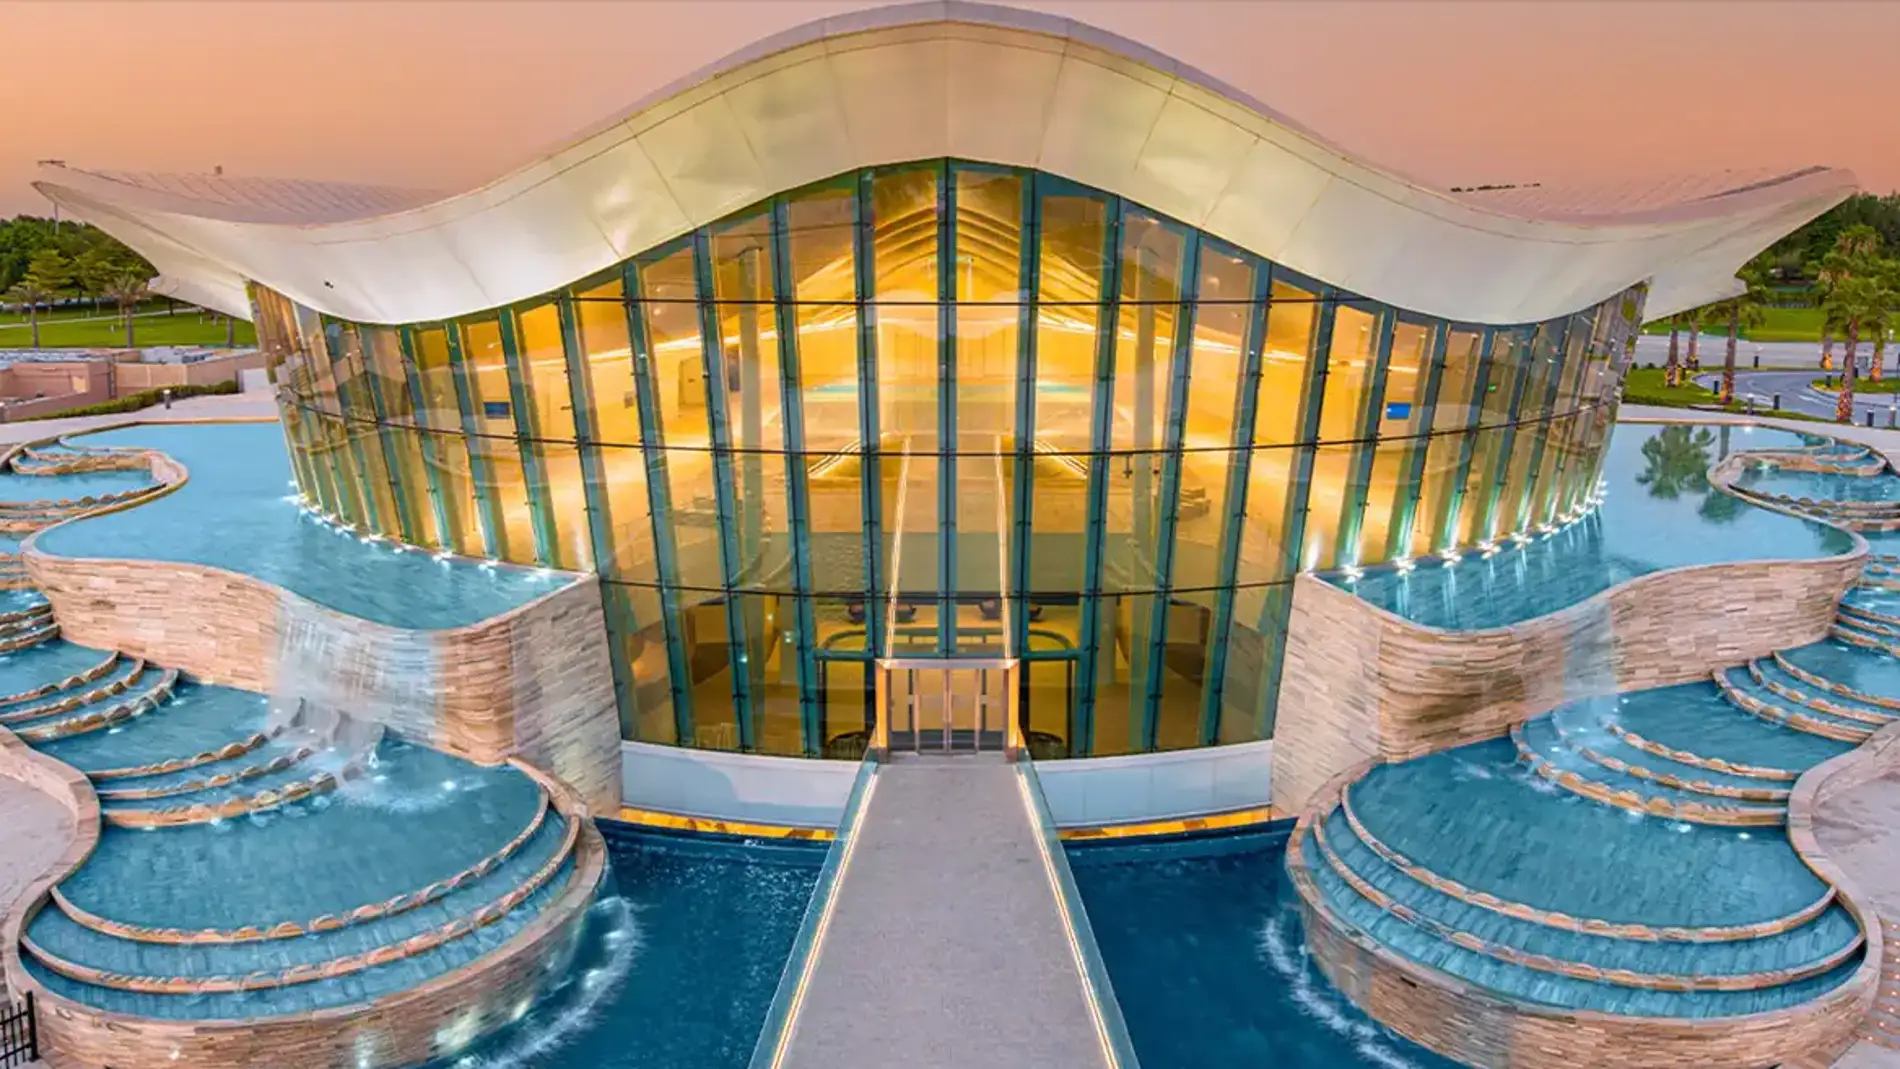 Estas son algunas de las piscinas más grandes y espectaculares del mundo